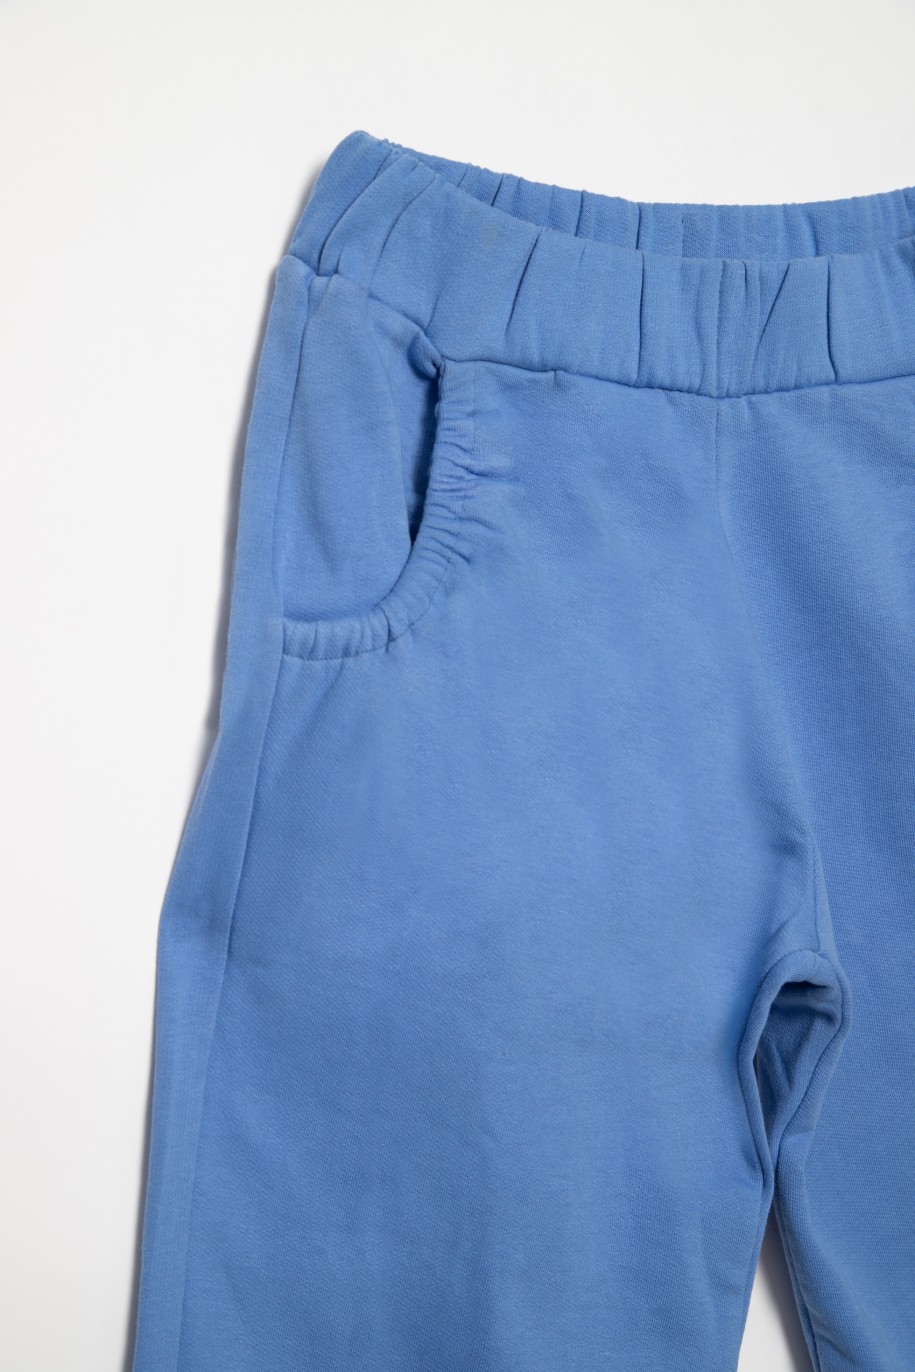 Niebieskie spodnie dresowe dla dziewczyny ze ściągaczami - 31817